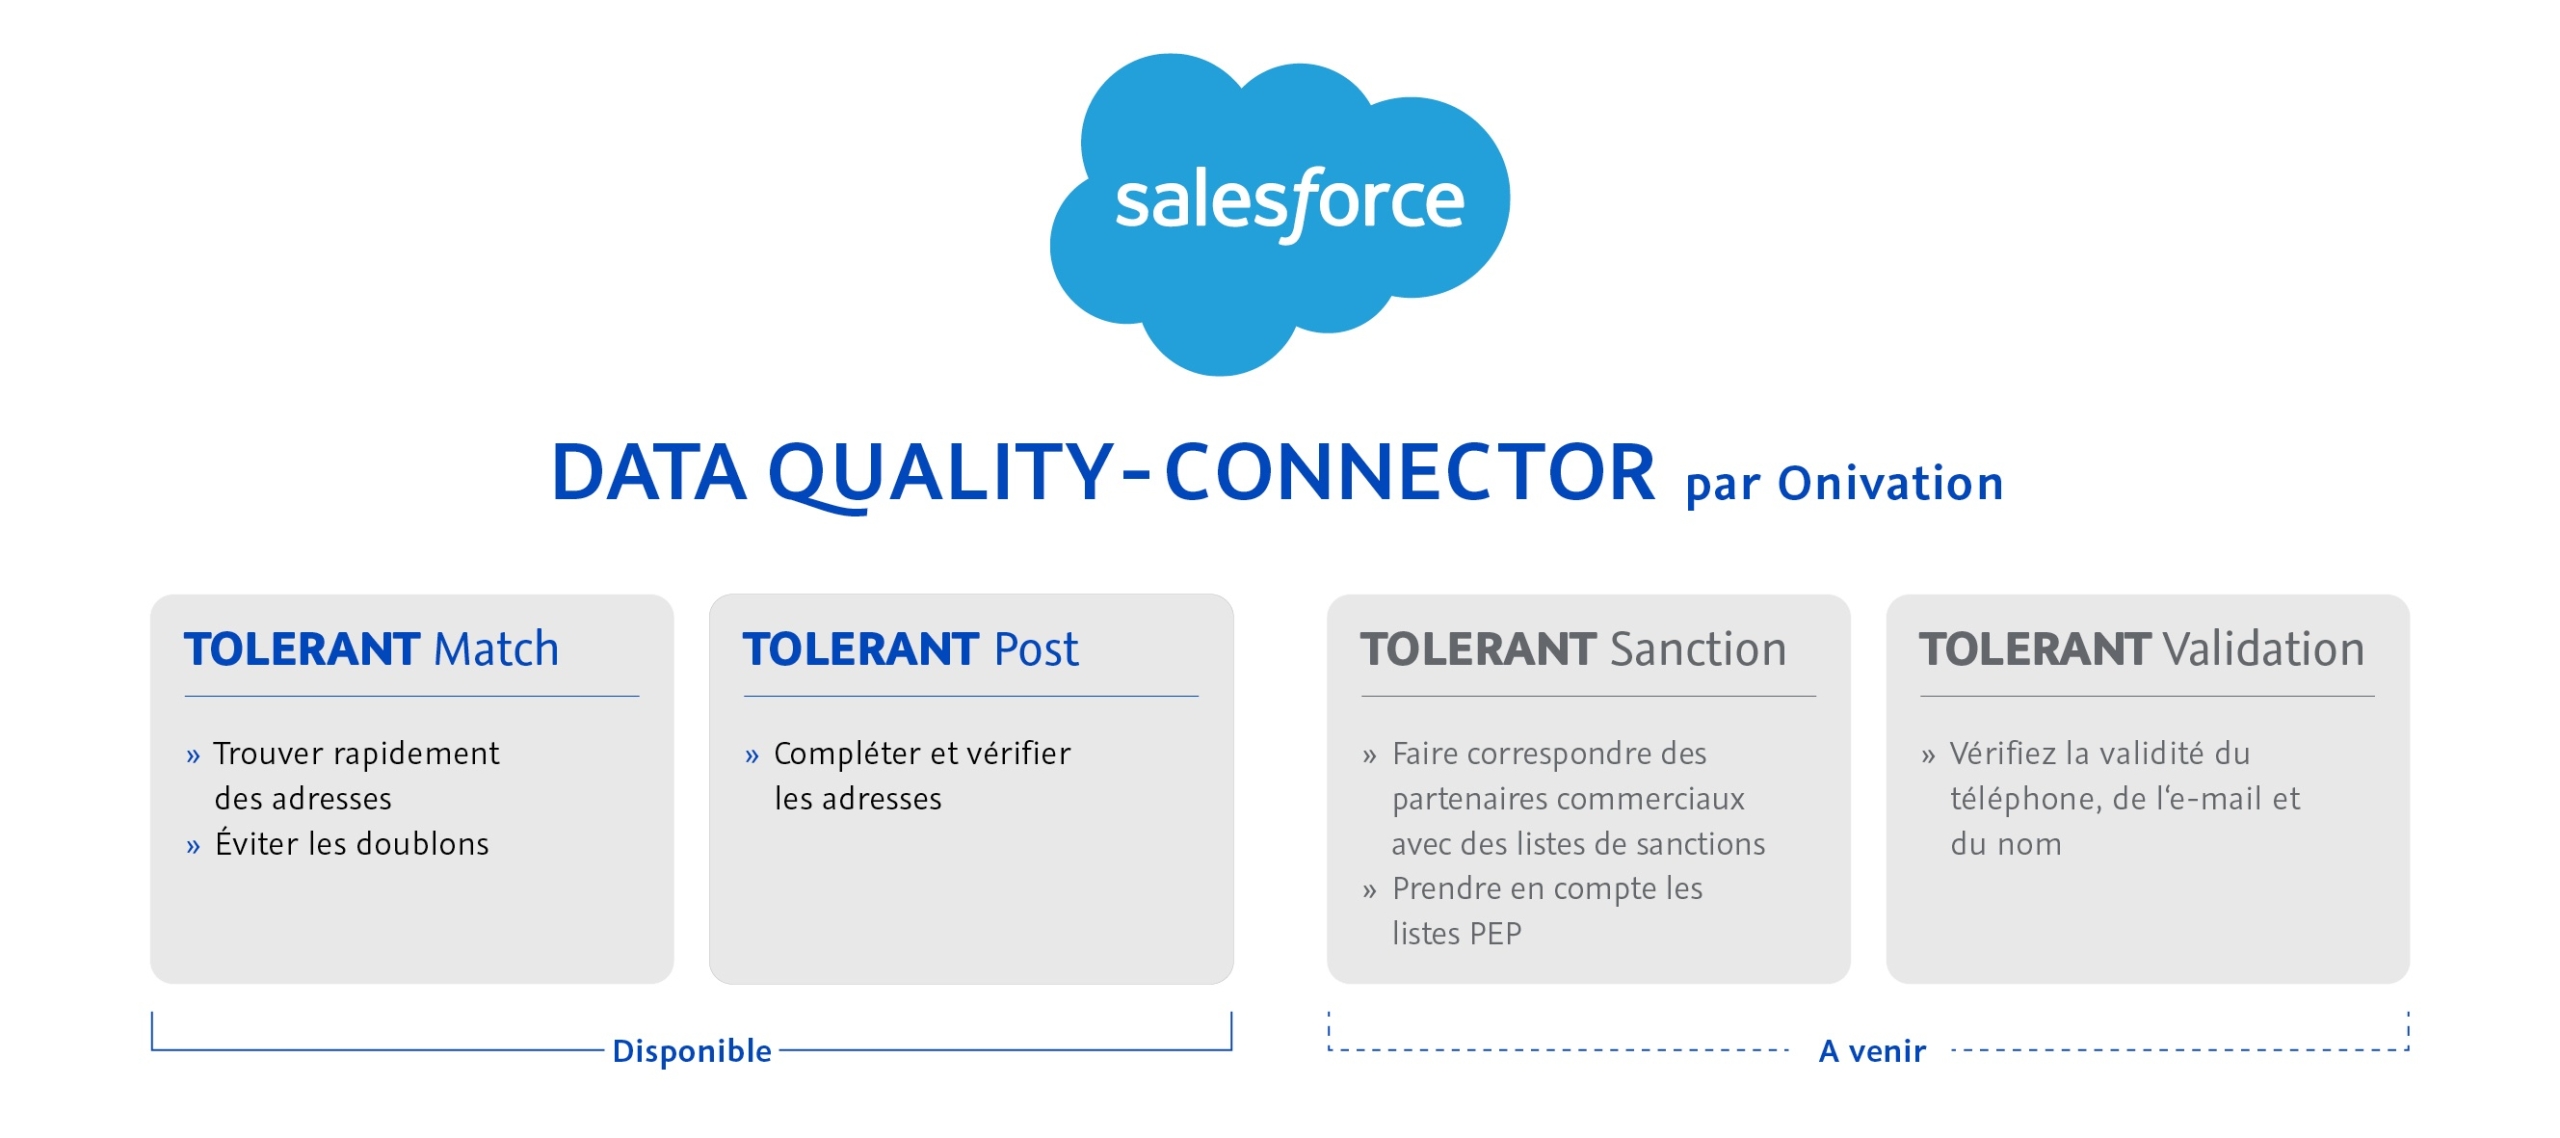 Salesforce Data quality-Connector par Onivation